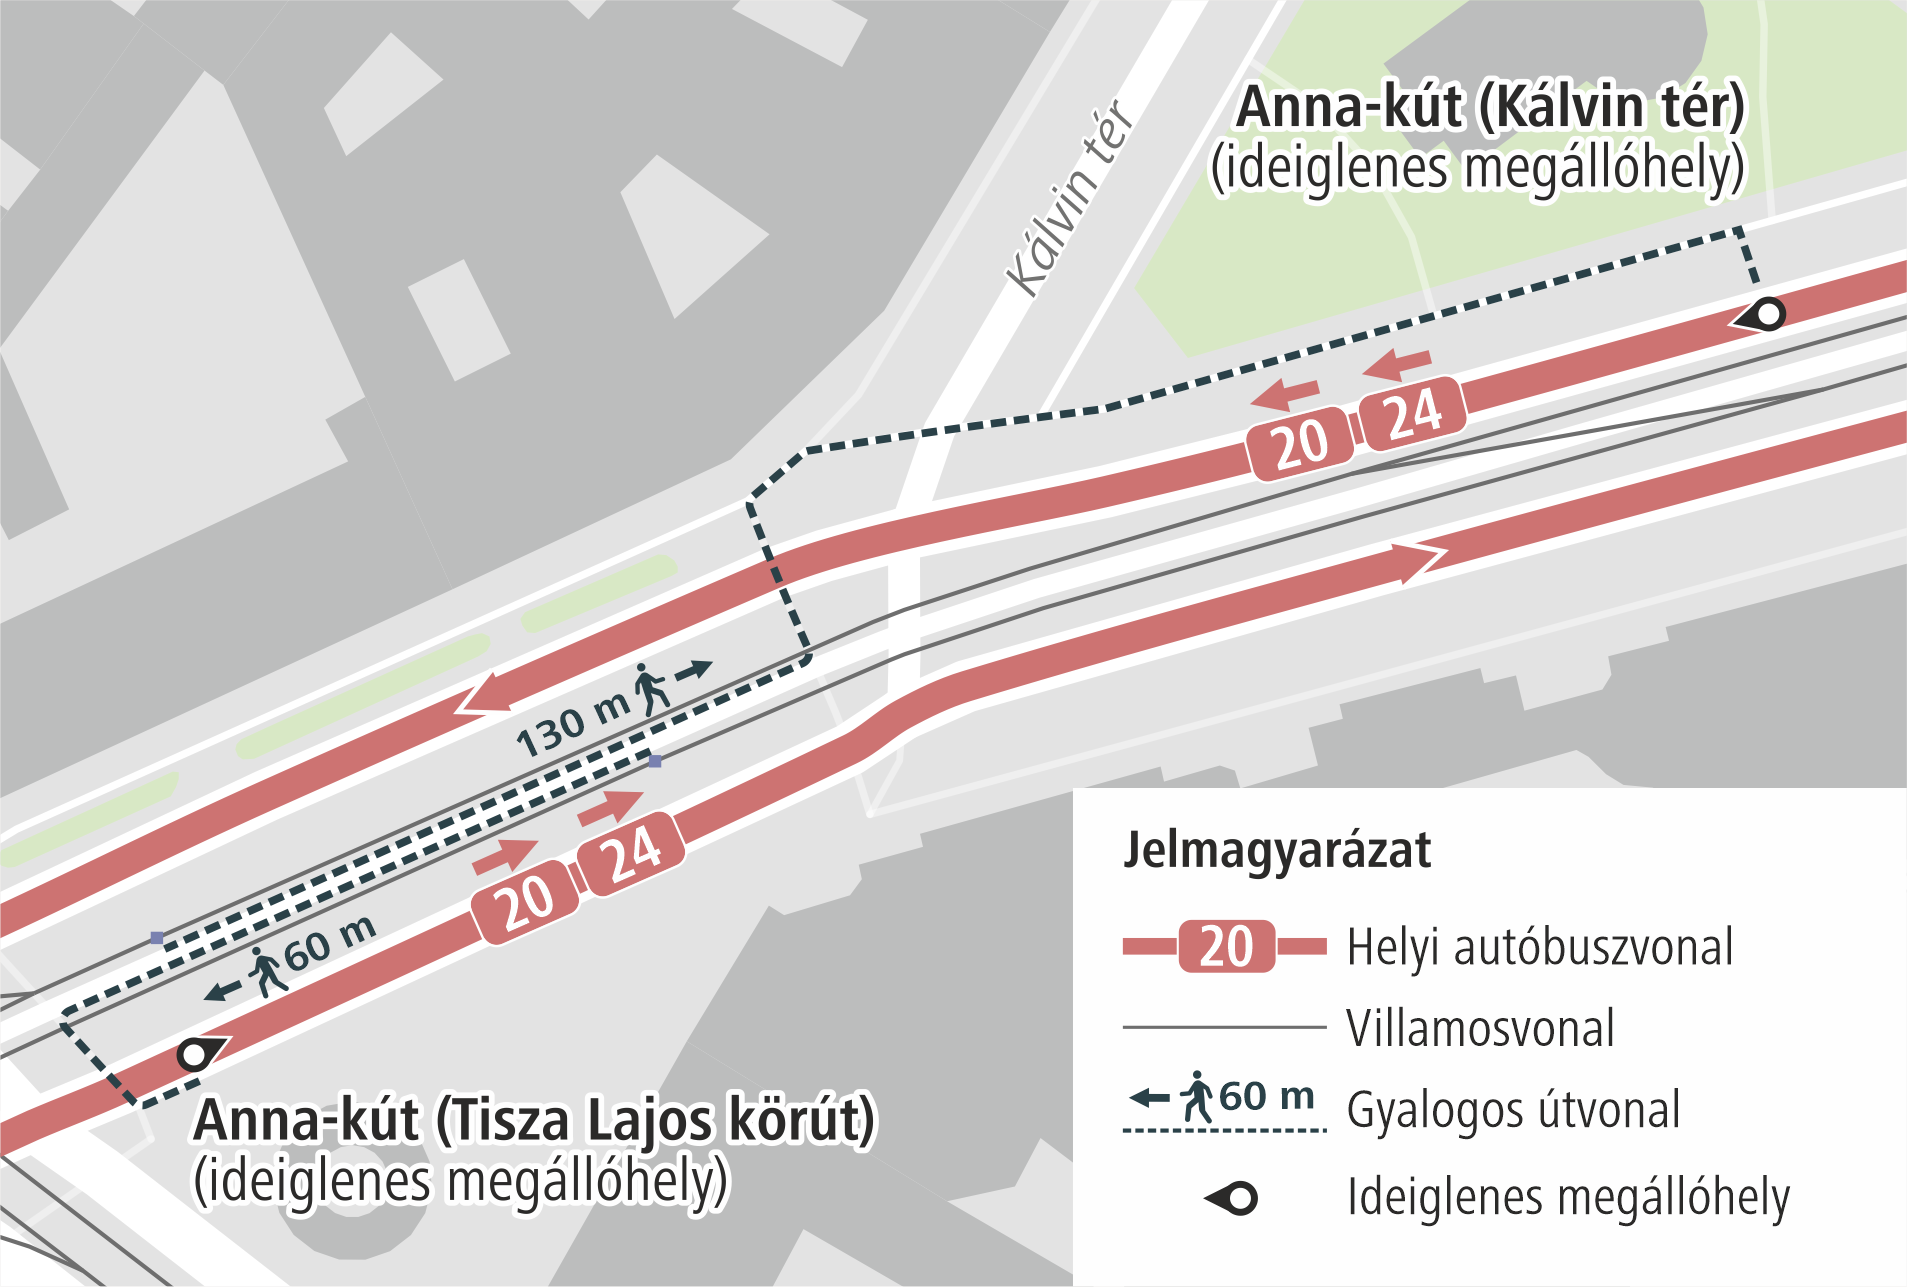 Szegeden munkálatok miatt áthelyezik az Anna-kút megállóhelyet, valamint lezárják a Dugonics tér (Dáni utca) megállót